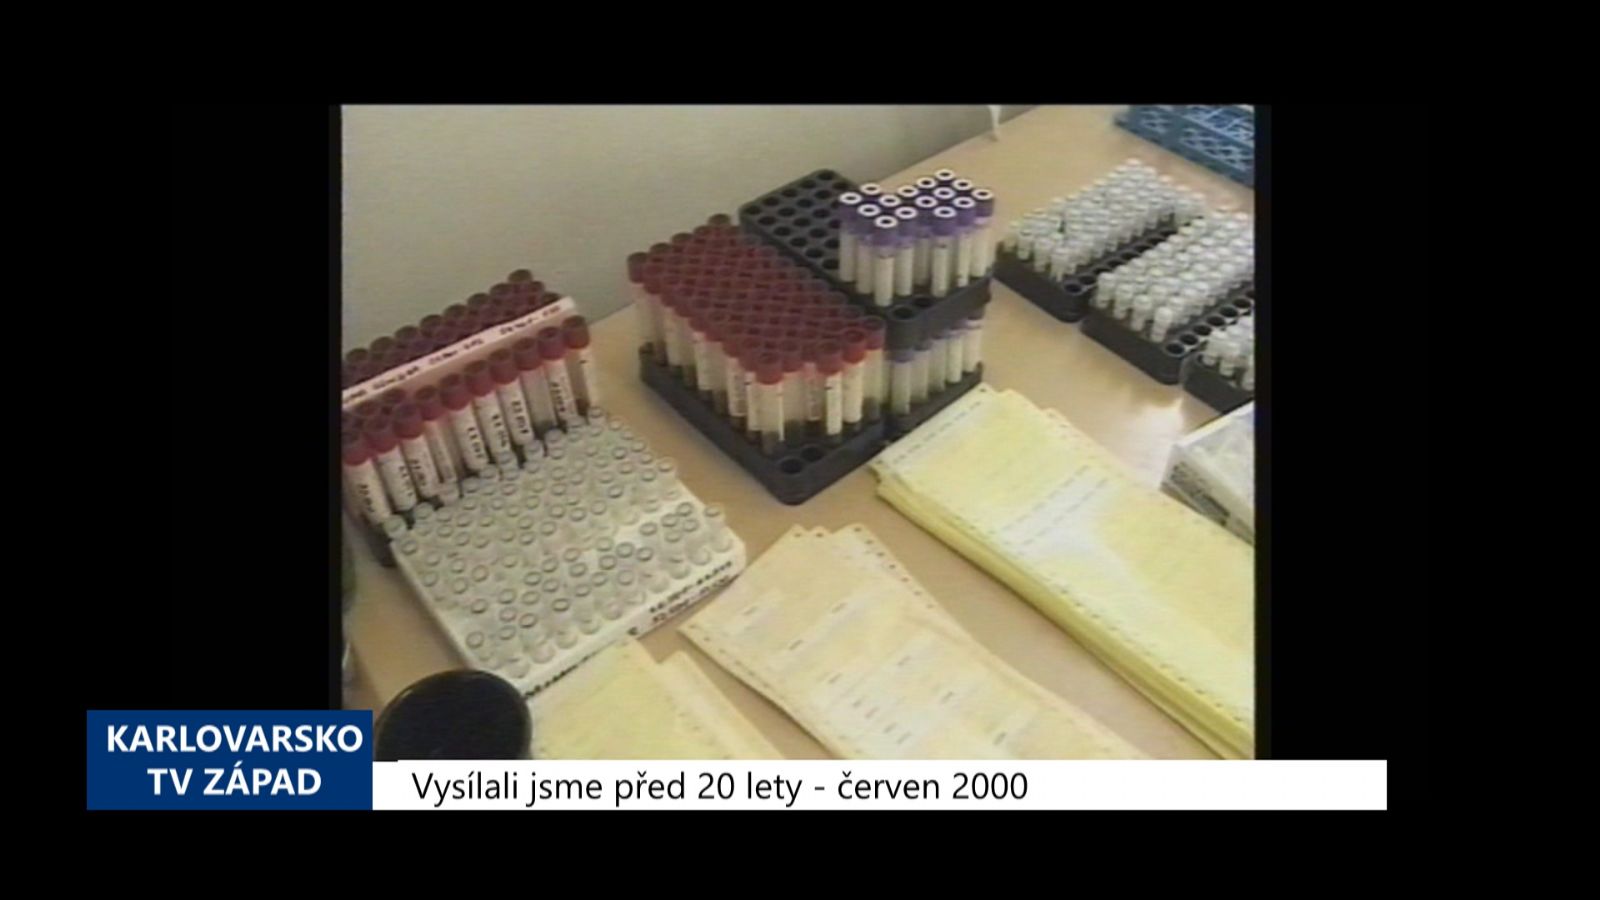 2000 – Cheb: Lékaři z IKEMu zjišťují rizika vzniku cévních onemocnění (TV Západ) 